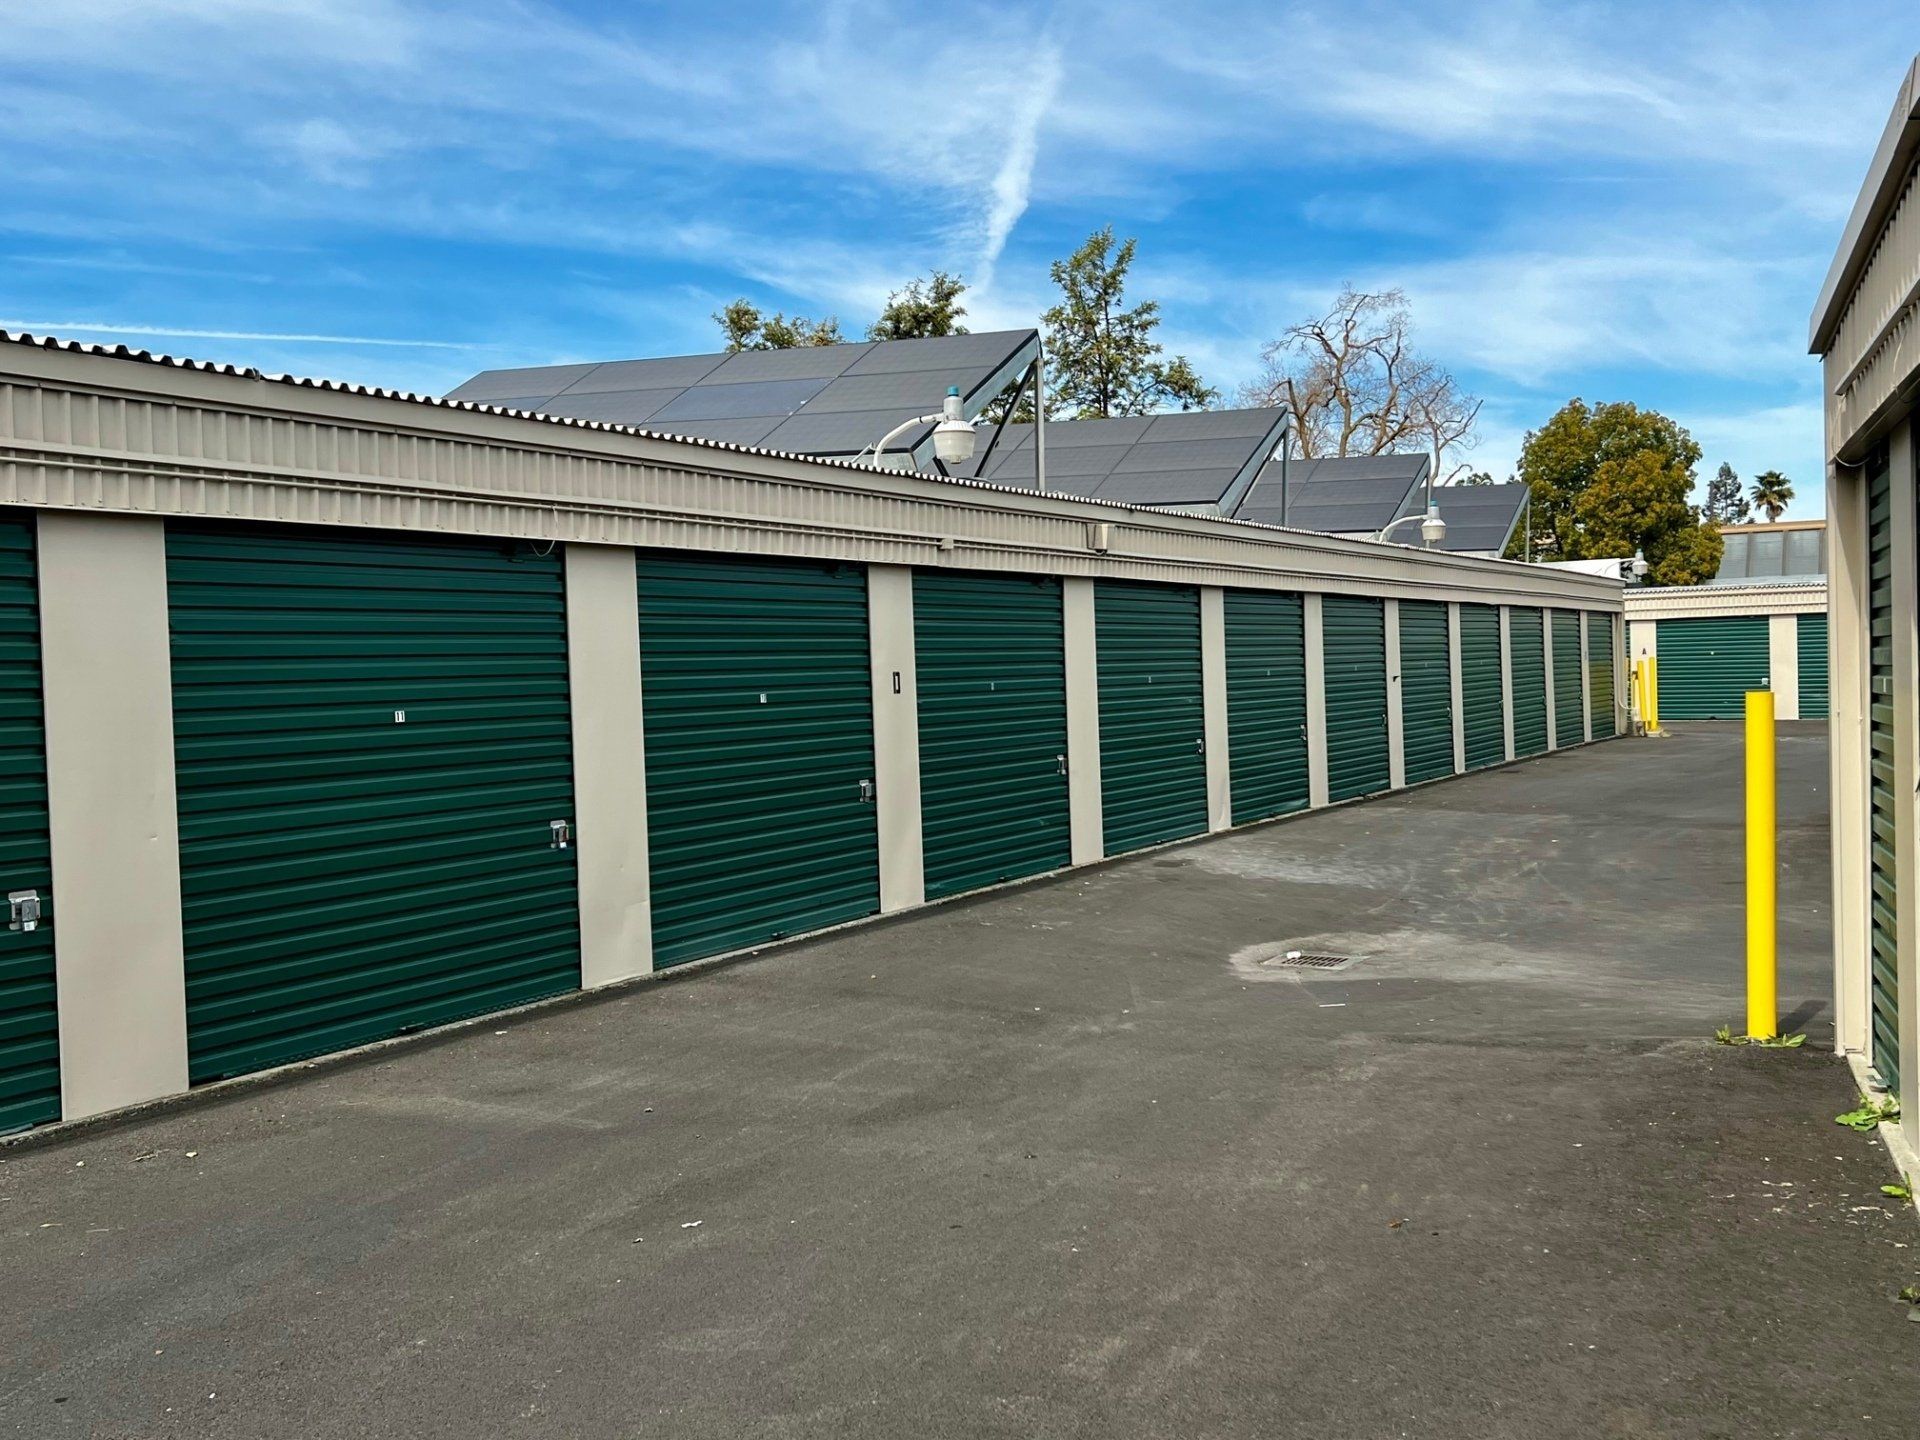 Central Davis Storage driveway storage doors